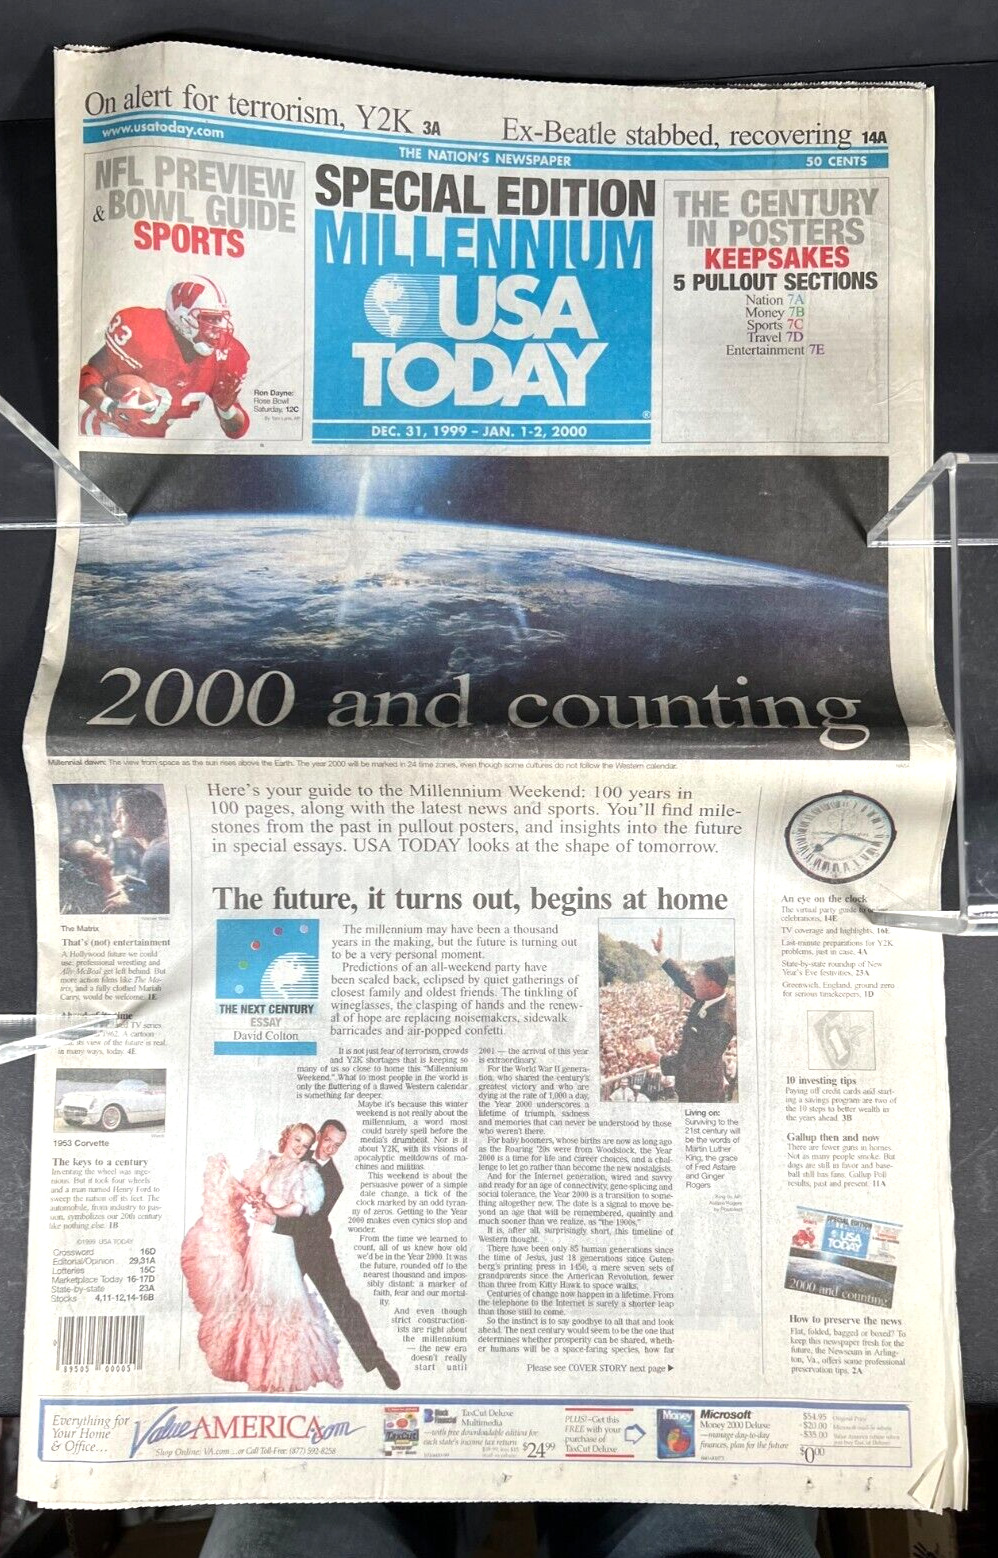 Y2K Millennium Special Edition of USA Today Dec 31, 1999 - Jan 1-2, 2000